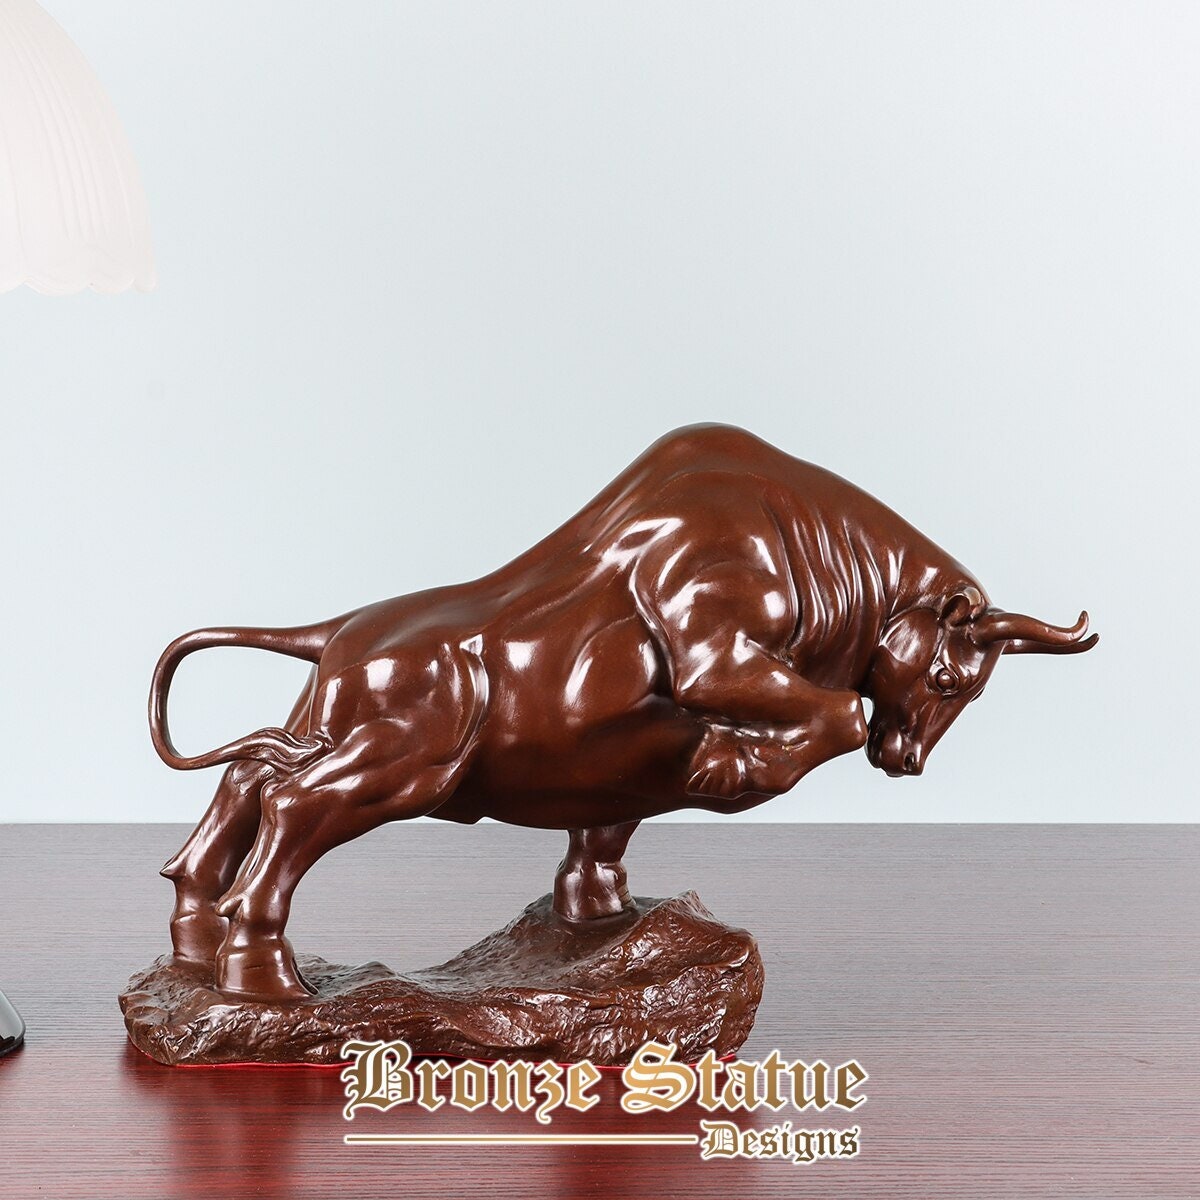 Statua di toro in bronzo scultura moderna animale figurine arte casa ufficio decorazione regali